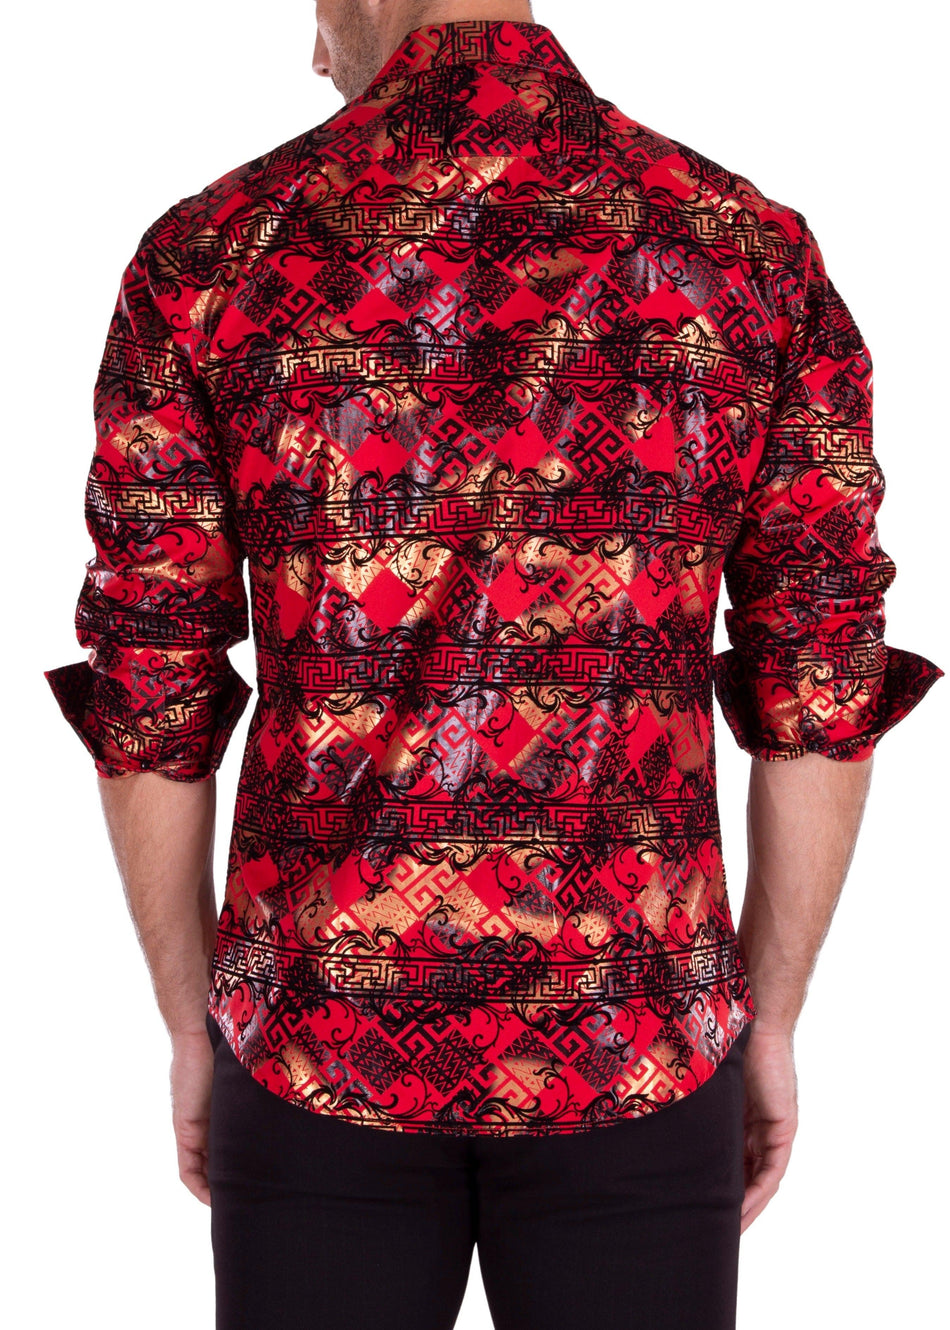 Greek Criss-Cross Metallic Long Sleeve Dress Shirt Red